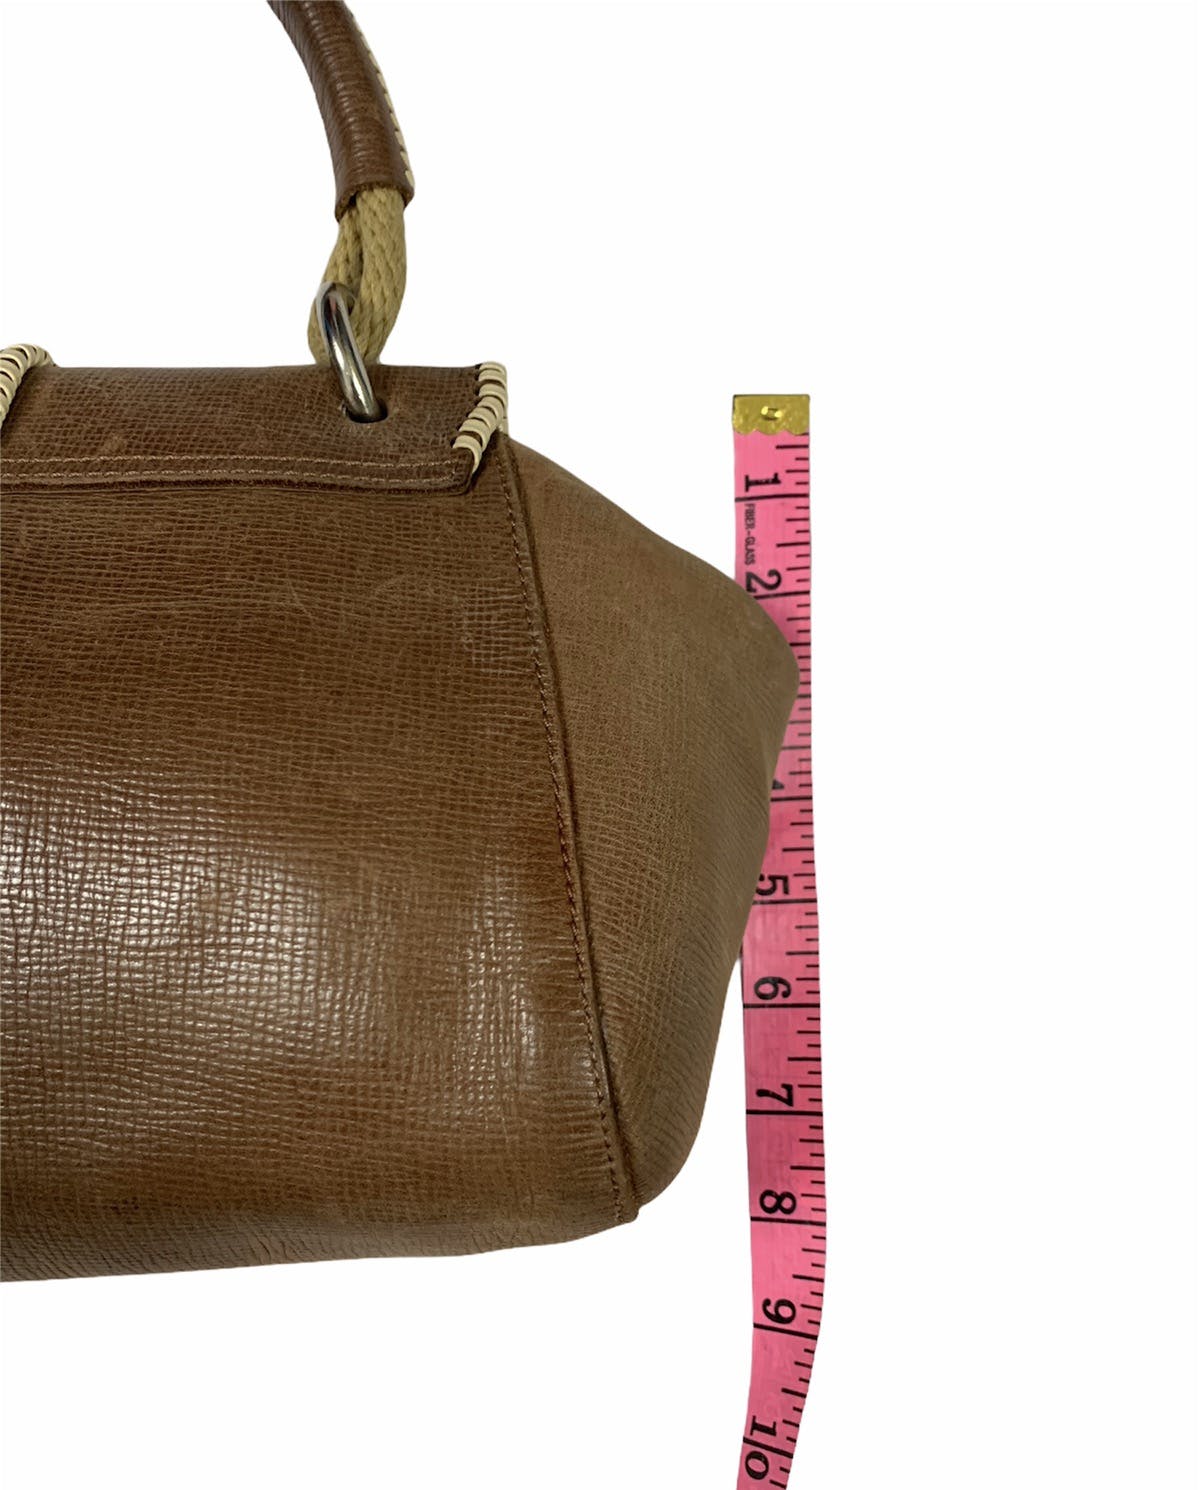 Marni leather handbag - 4